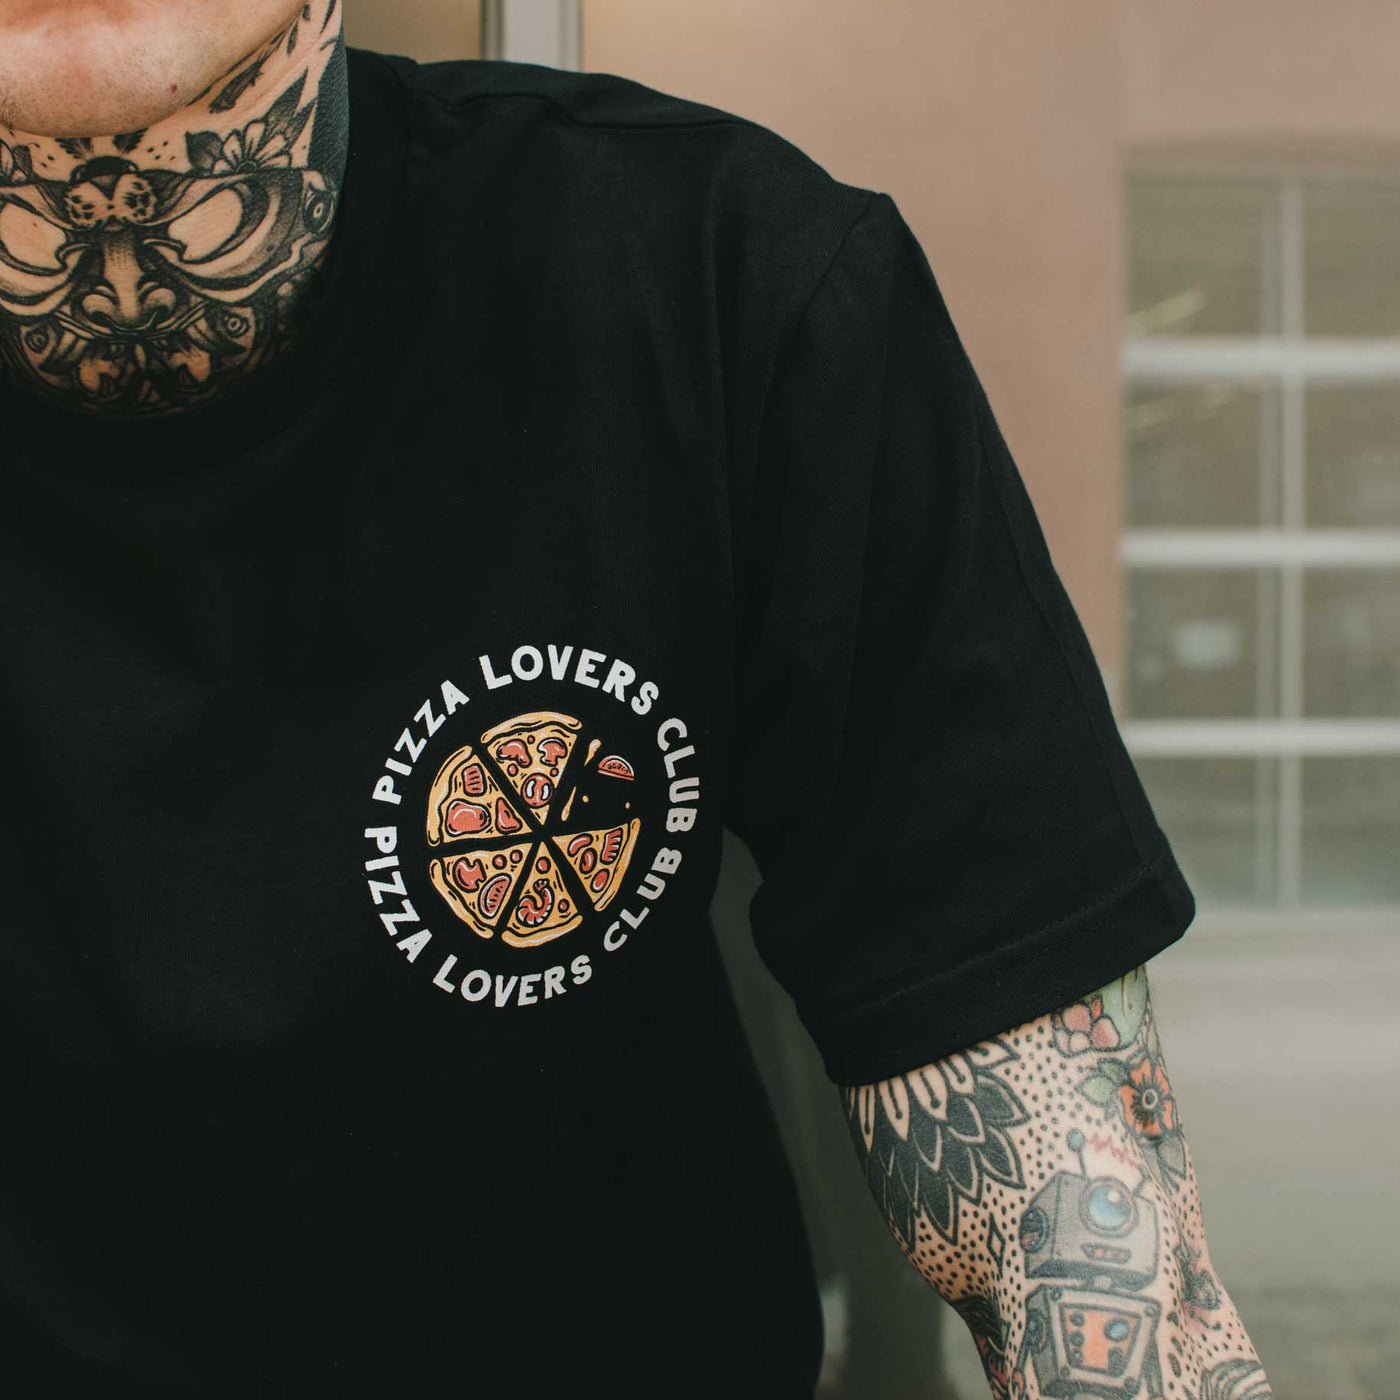 Love Pizza or Die - Camiseta